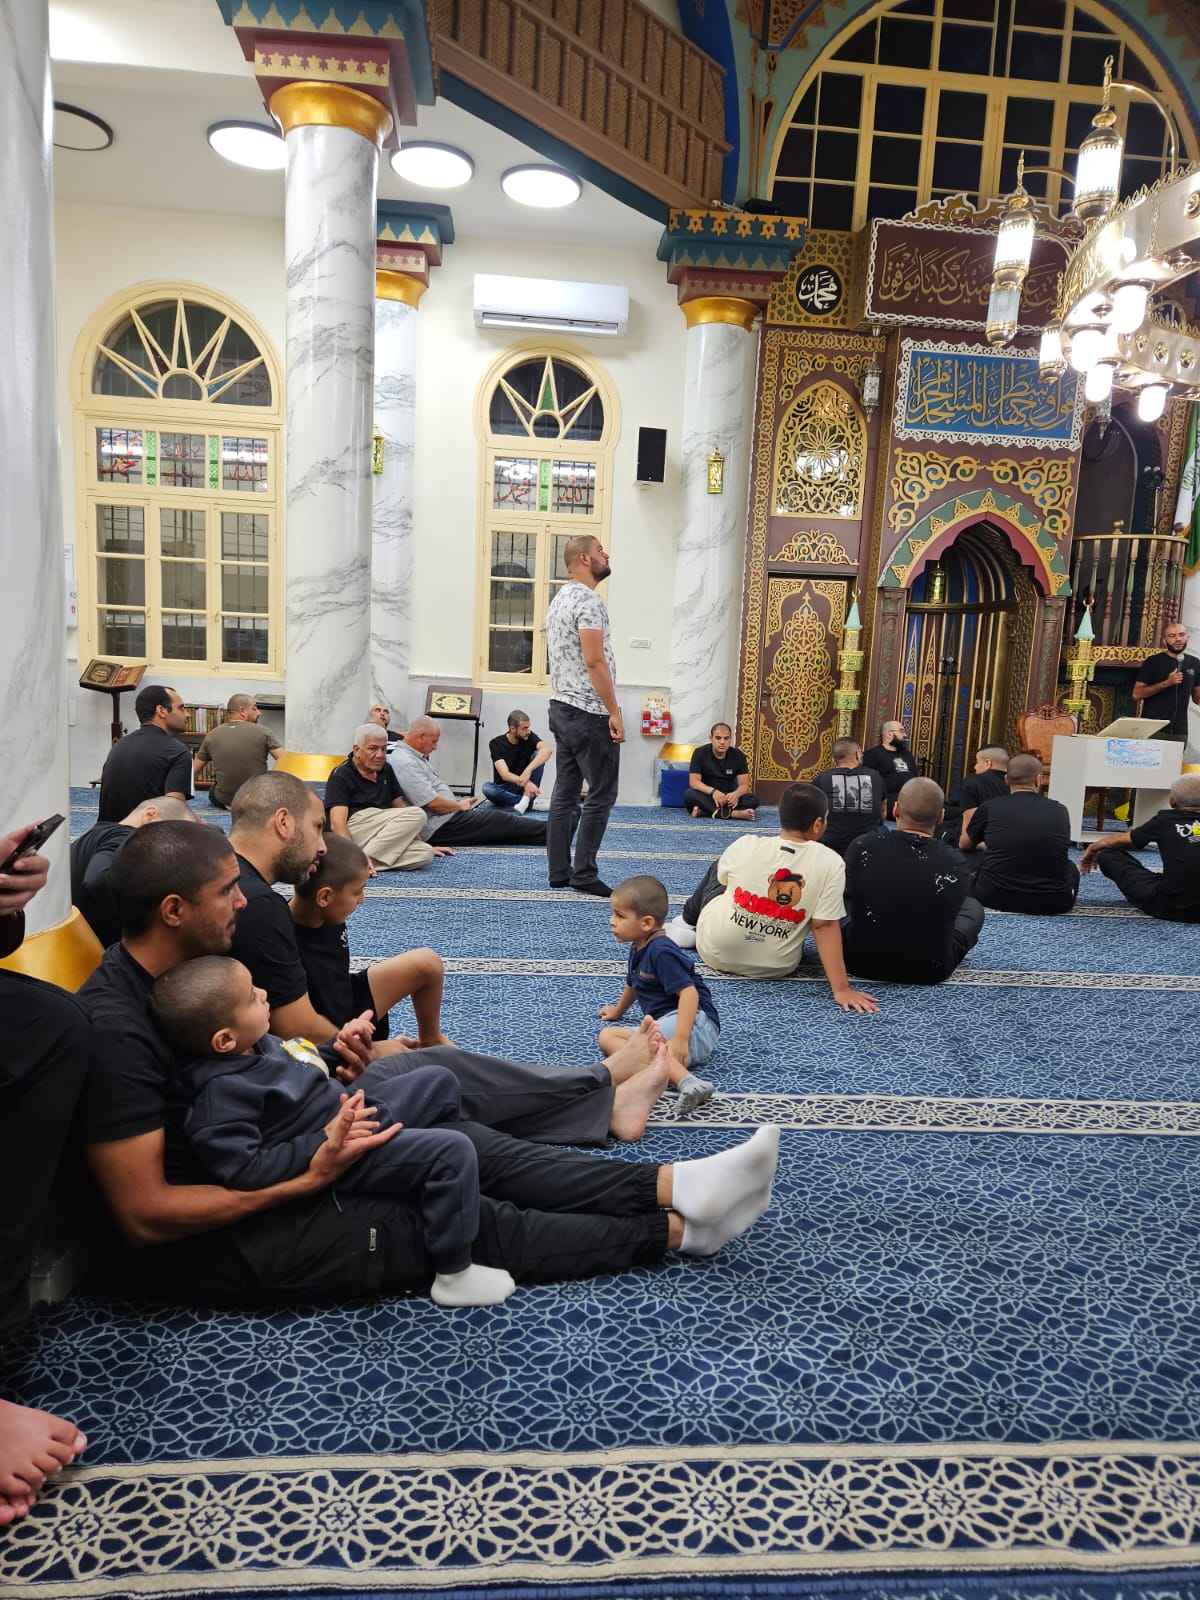 #يافا: بالصور الأمسية الإيمانية الأسبوعية (مجالس الإيمان) في مسجد النزهة